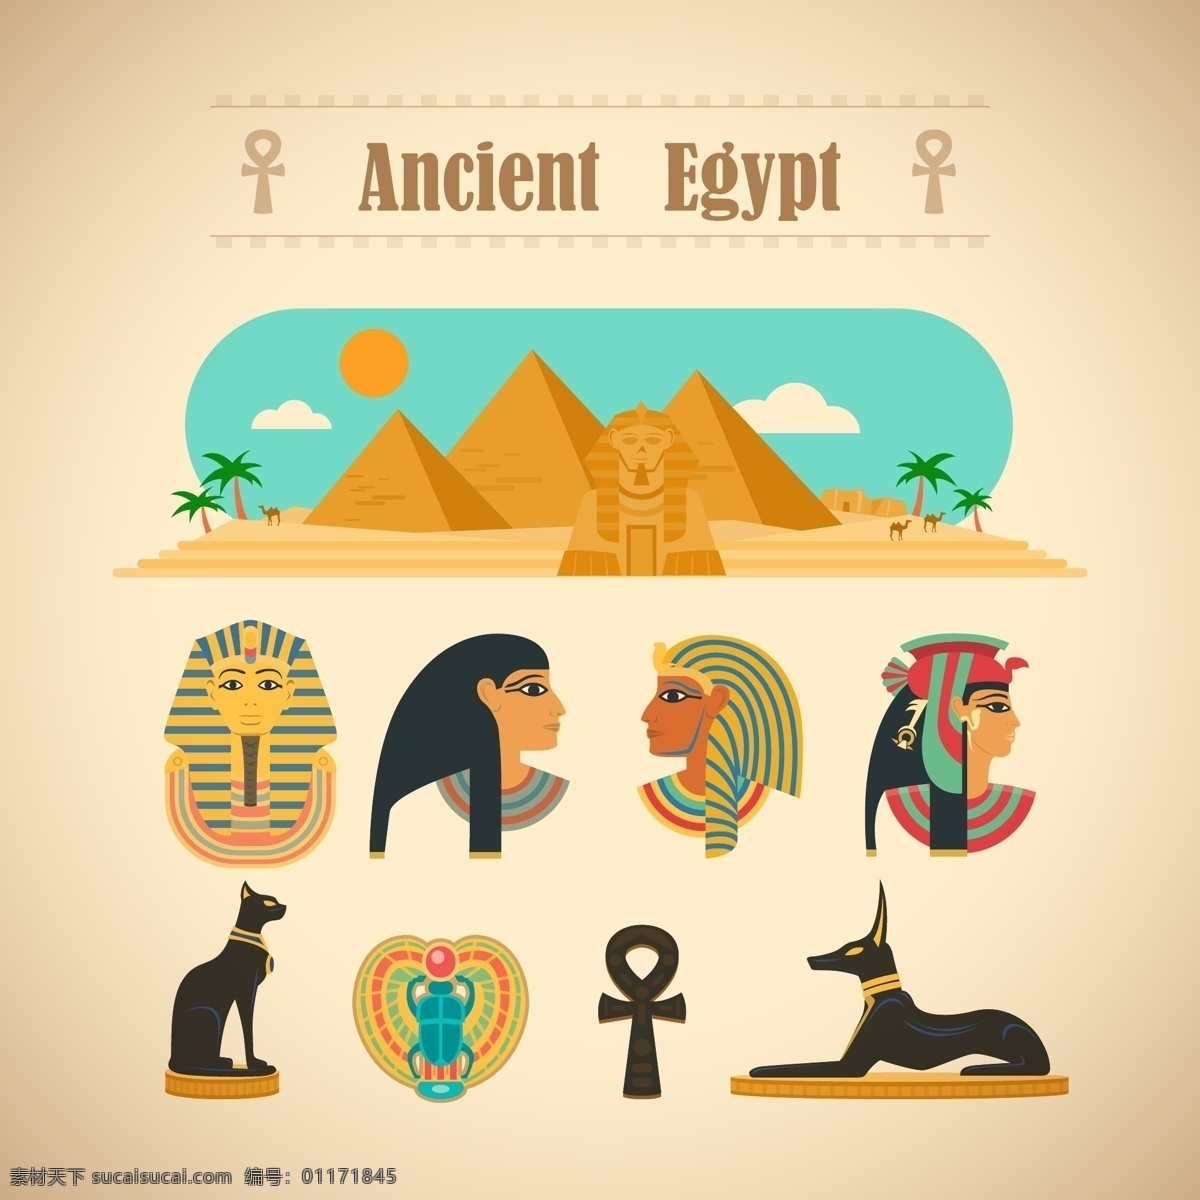 古埃文化元素 埃及 阿努比斯 沙漠 埃及人 埃及旅游 神象 荷鲁斯神话 法老 金字塔 人头狮身 狮身人面像 古埃及 埃及文化 文明古国 文化艺术 传统文化 白色